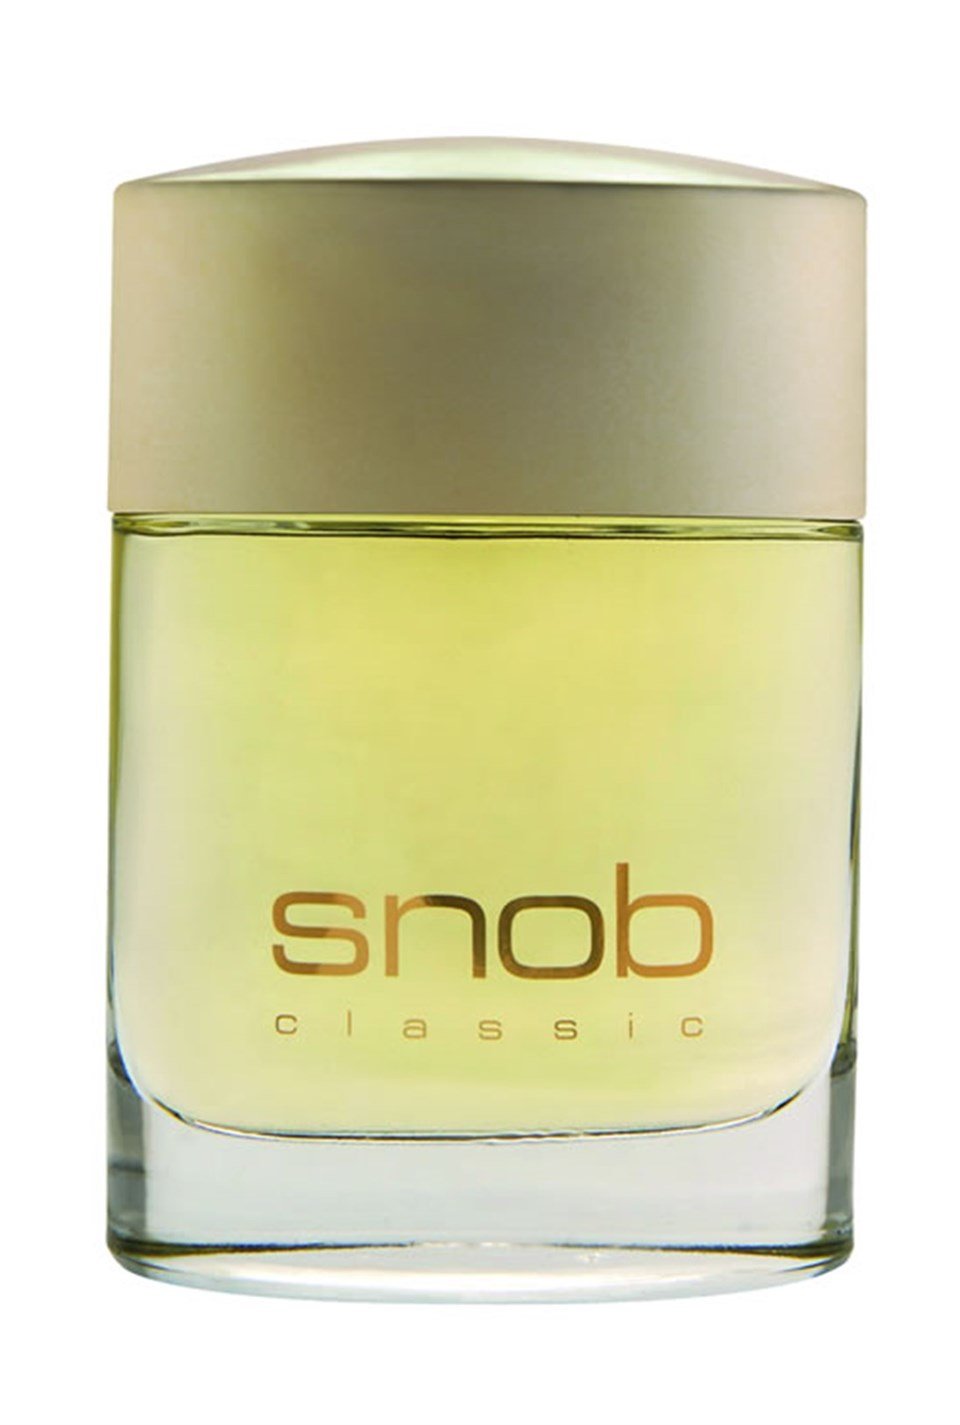 Snop Classic Edt Erkek Parfümü 100 Ml +snop Deodorant 150 Ml,  Altintepeshop.com'da En Uygun Fiyatlar